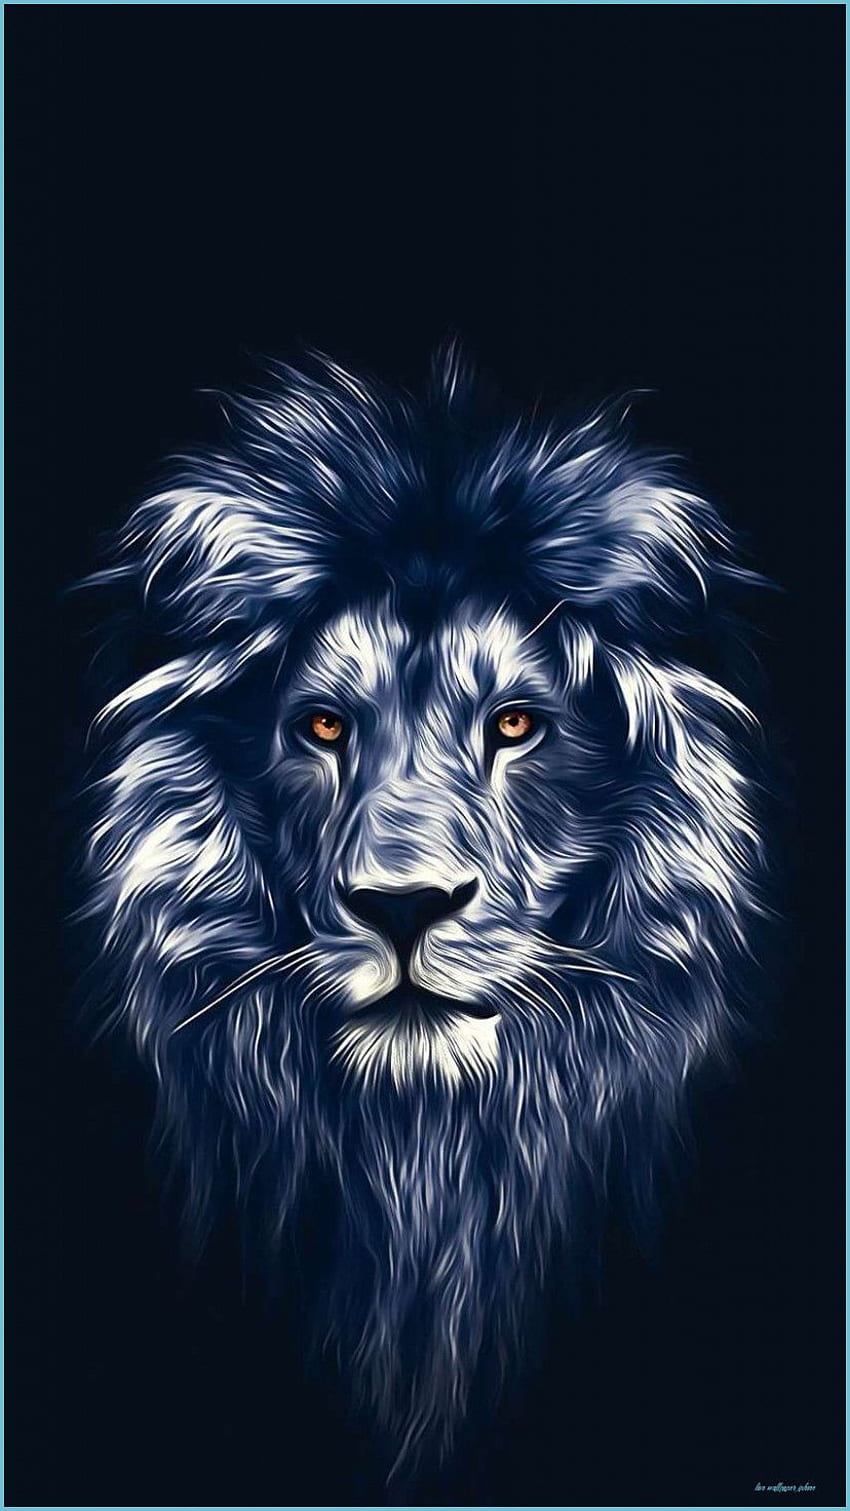 Lion IPhone - Top Lion IPhone Background - Lion iPhone, Cute Lion fondo de pantalla del teléfono